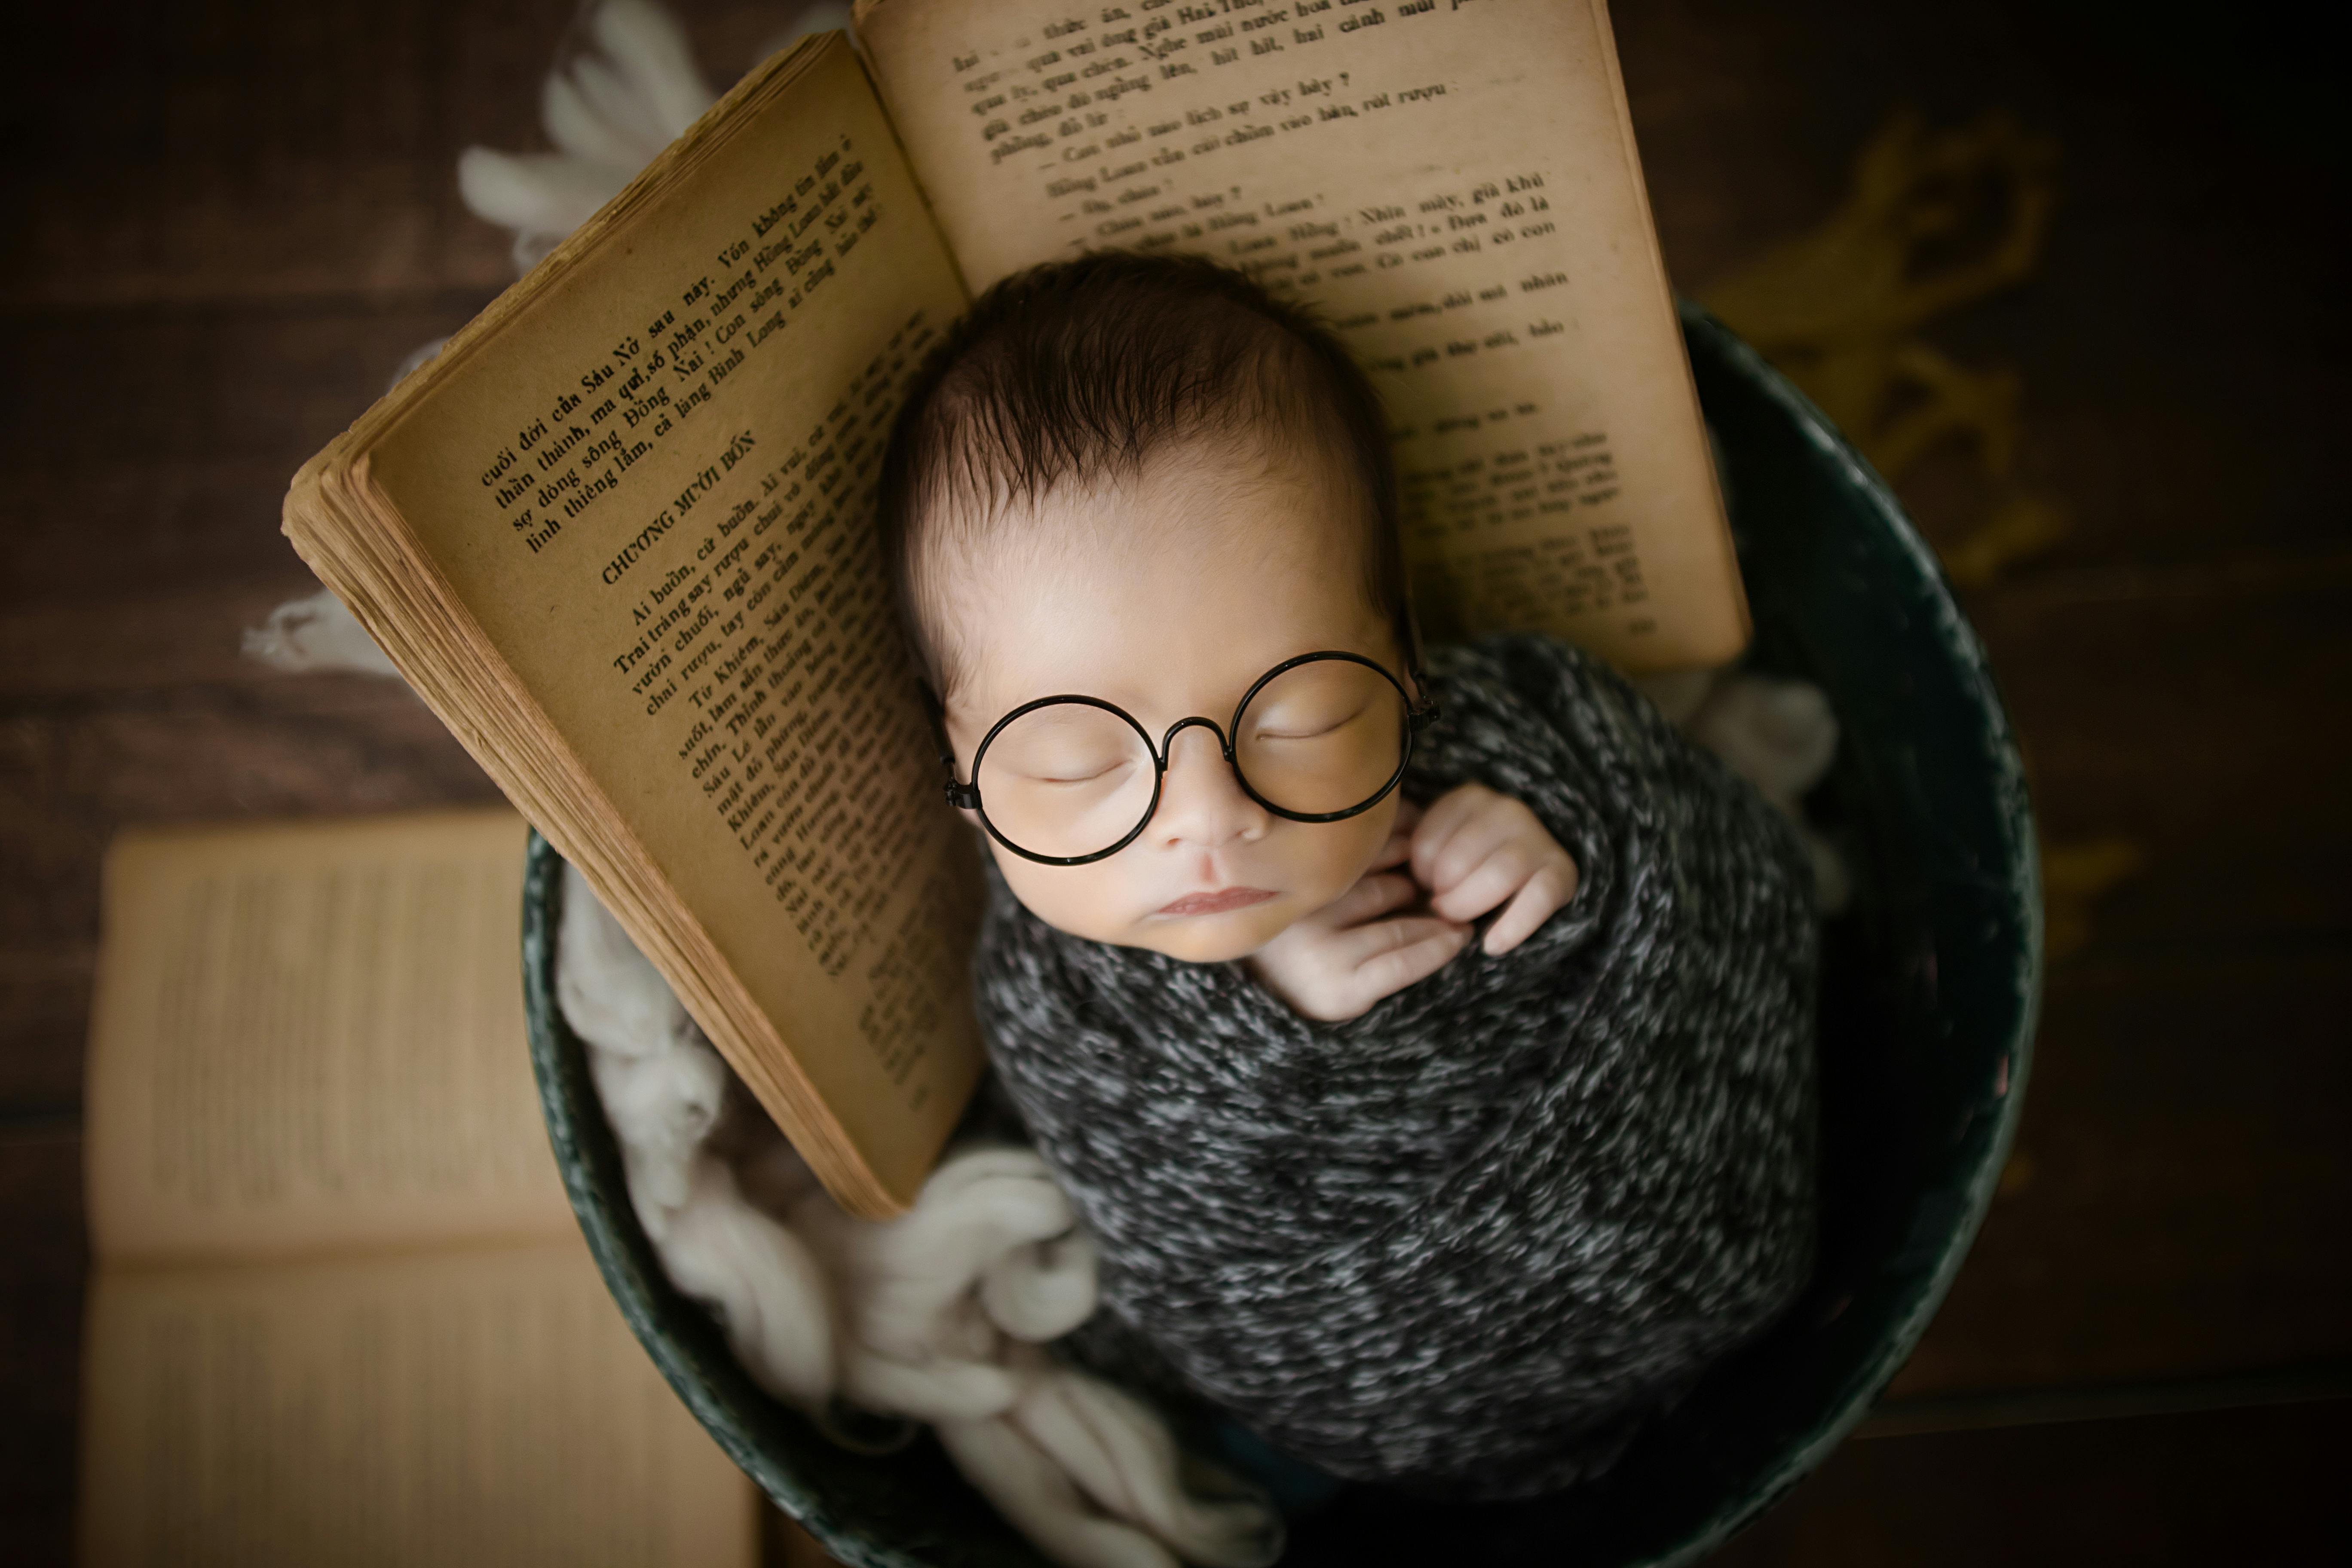 Bebé que lee un libro foto de archivo. Imagen de universidad - 4064176